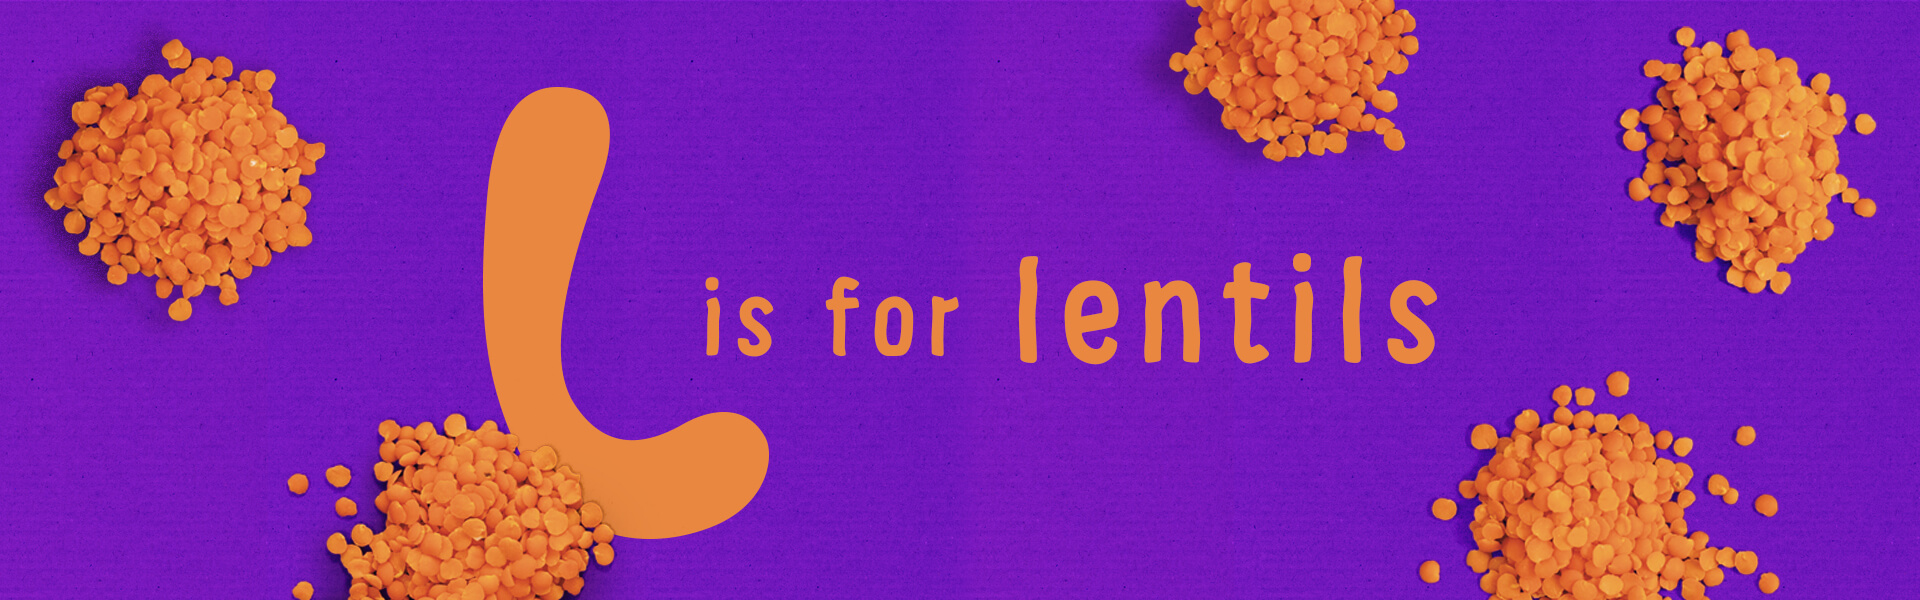 Organix l is for lentils